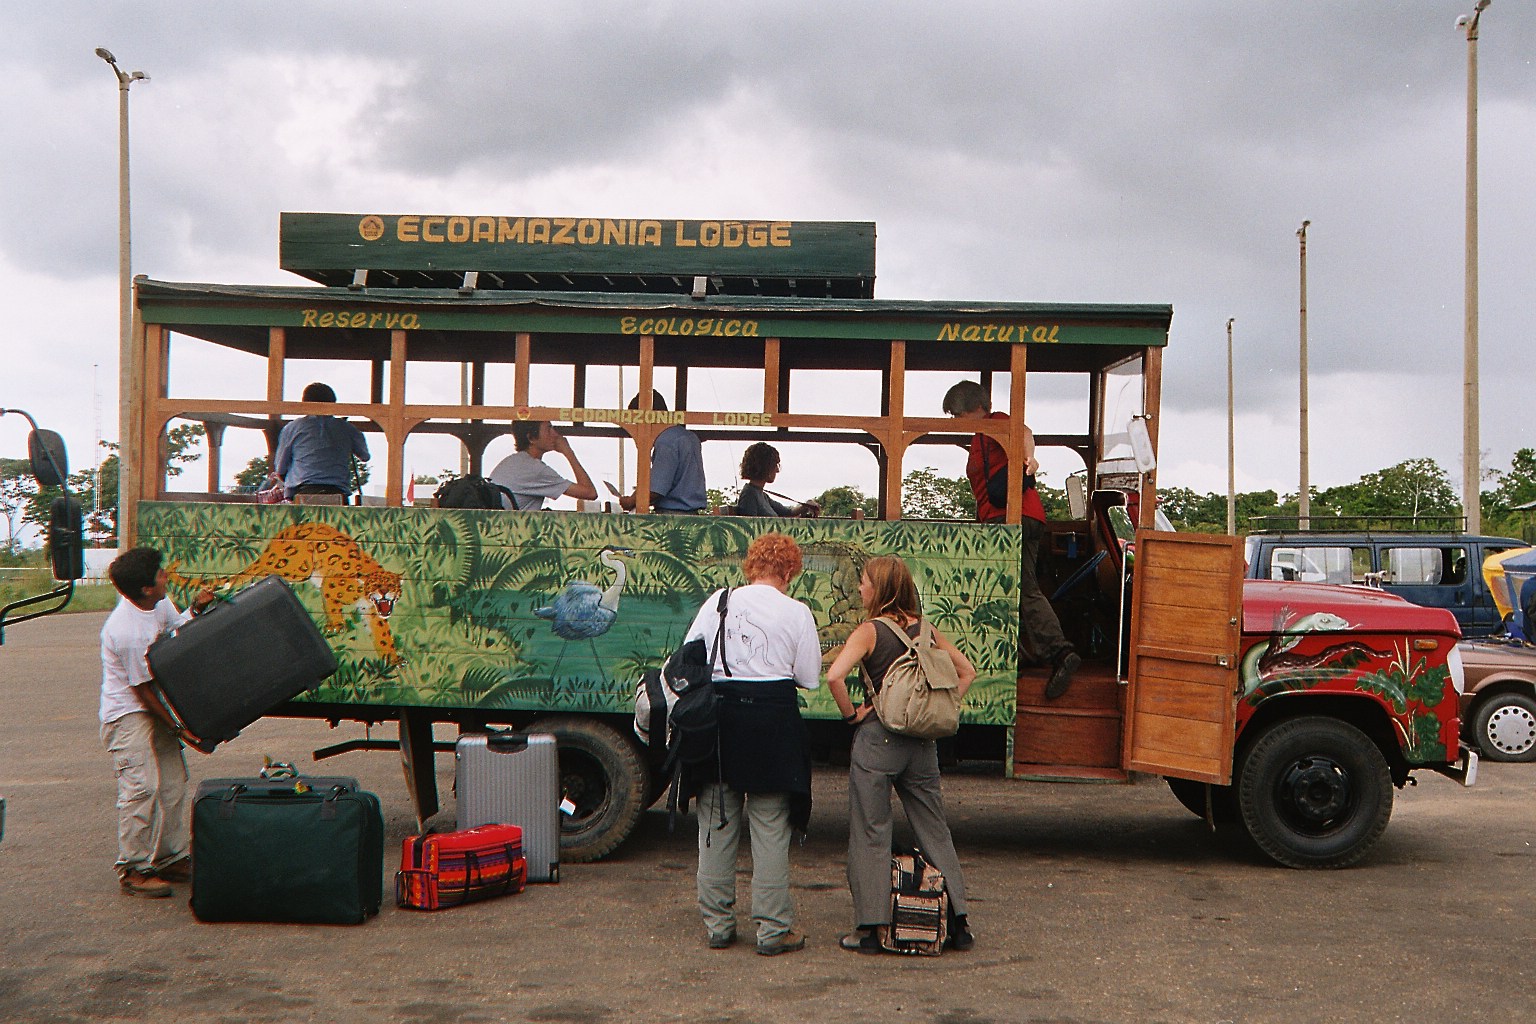 Shuttle Bus in Peru.